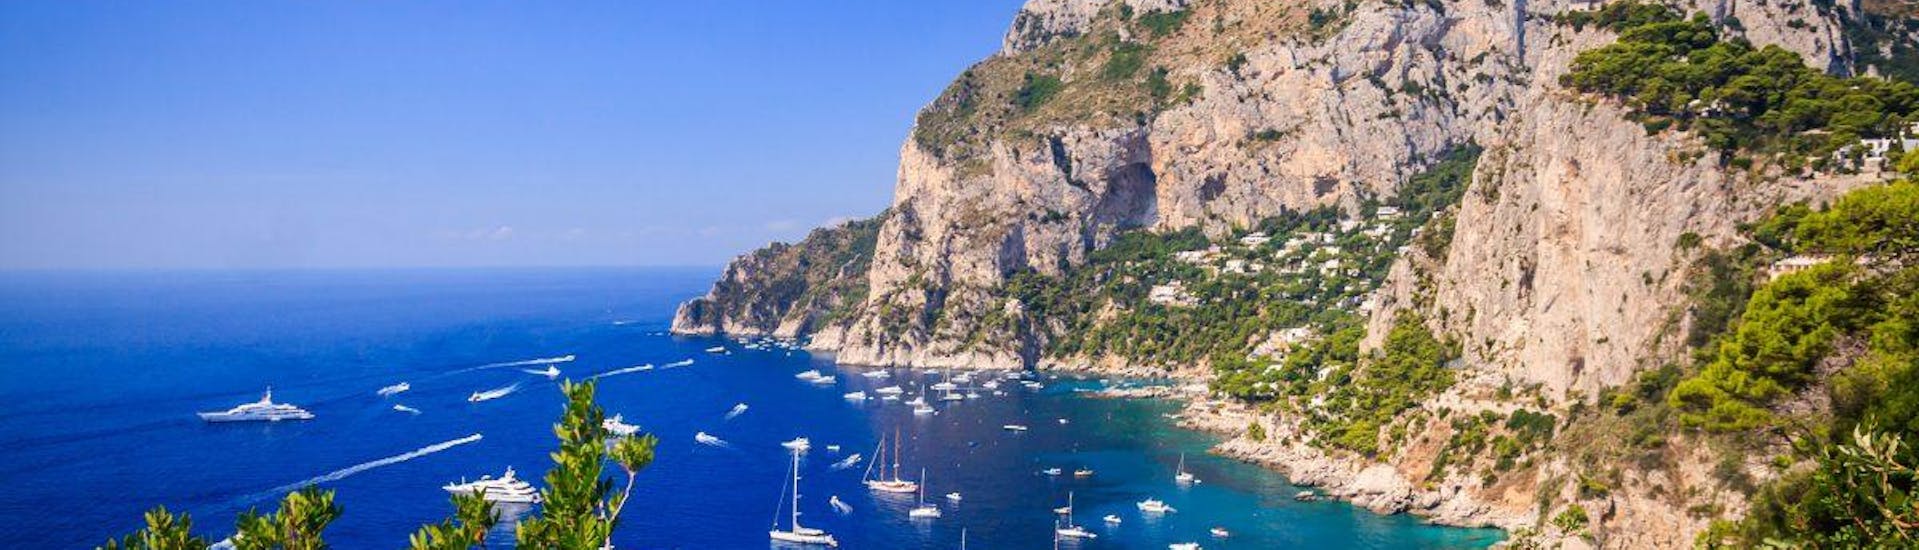 Puoi vedere il bellissimo porto di Capri in questa gita in barca da Torre del Greco ed Ercolano a Capri.